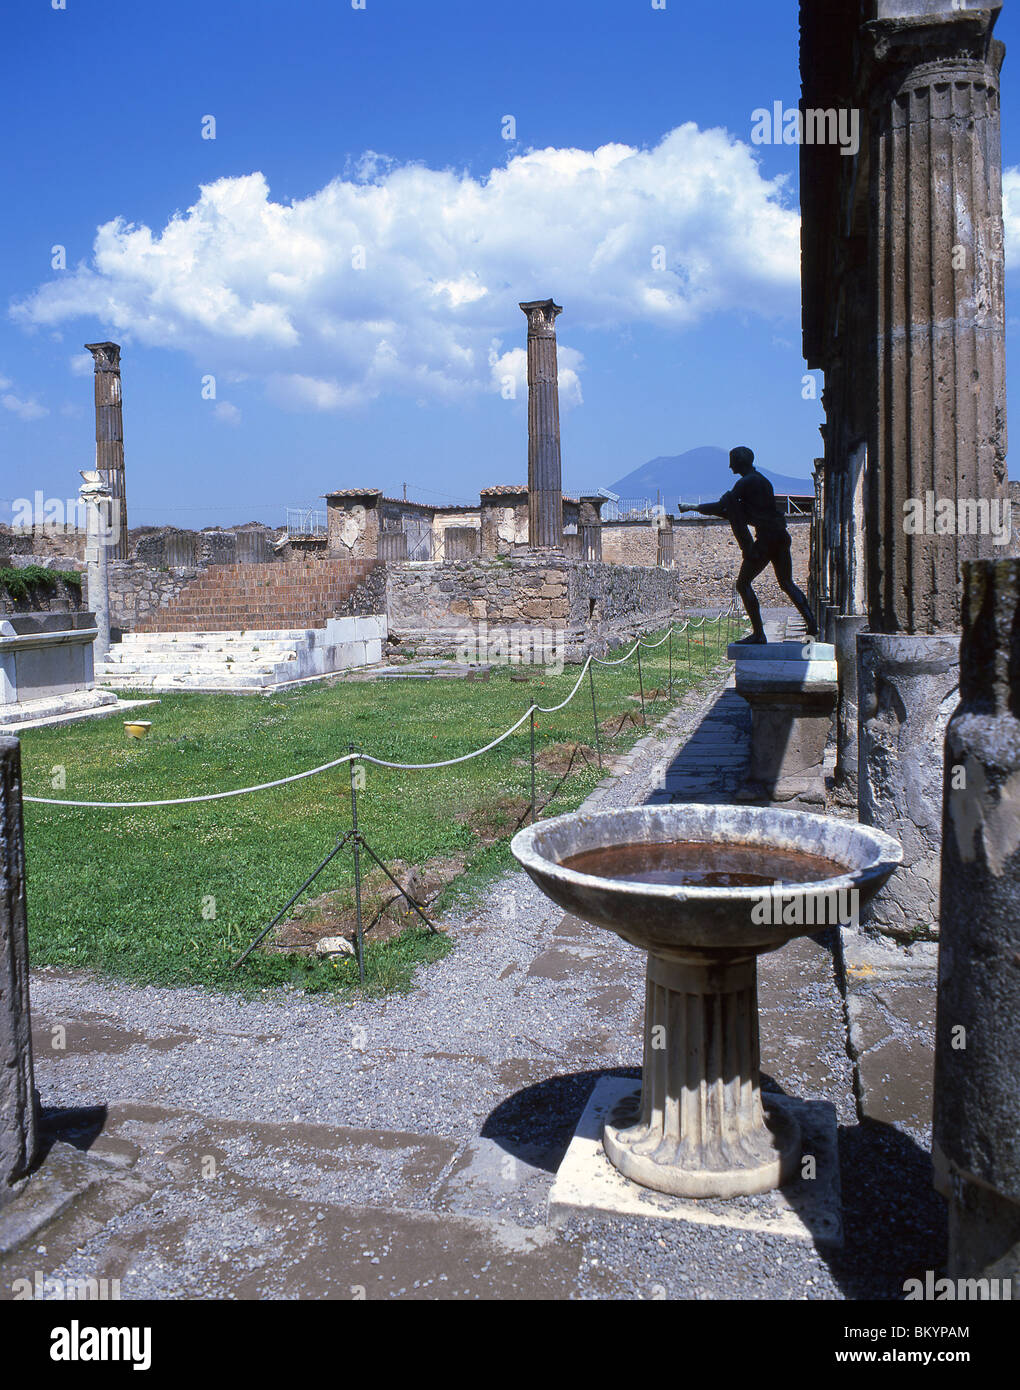 Sanctuaire d'Apollon, ancienne ville de Pompéi, Pompéi, ville métropolitaine de Naples, région de Campanie, Italie Banque D'Images